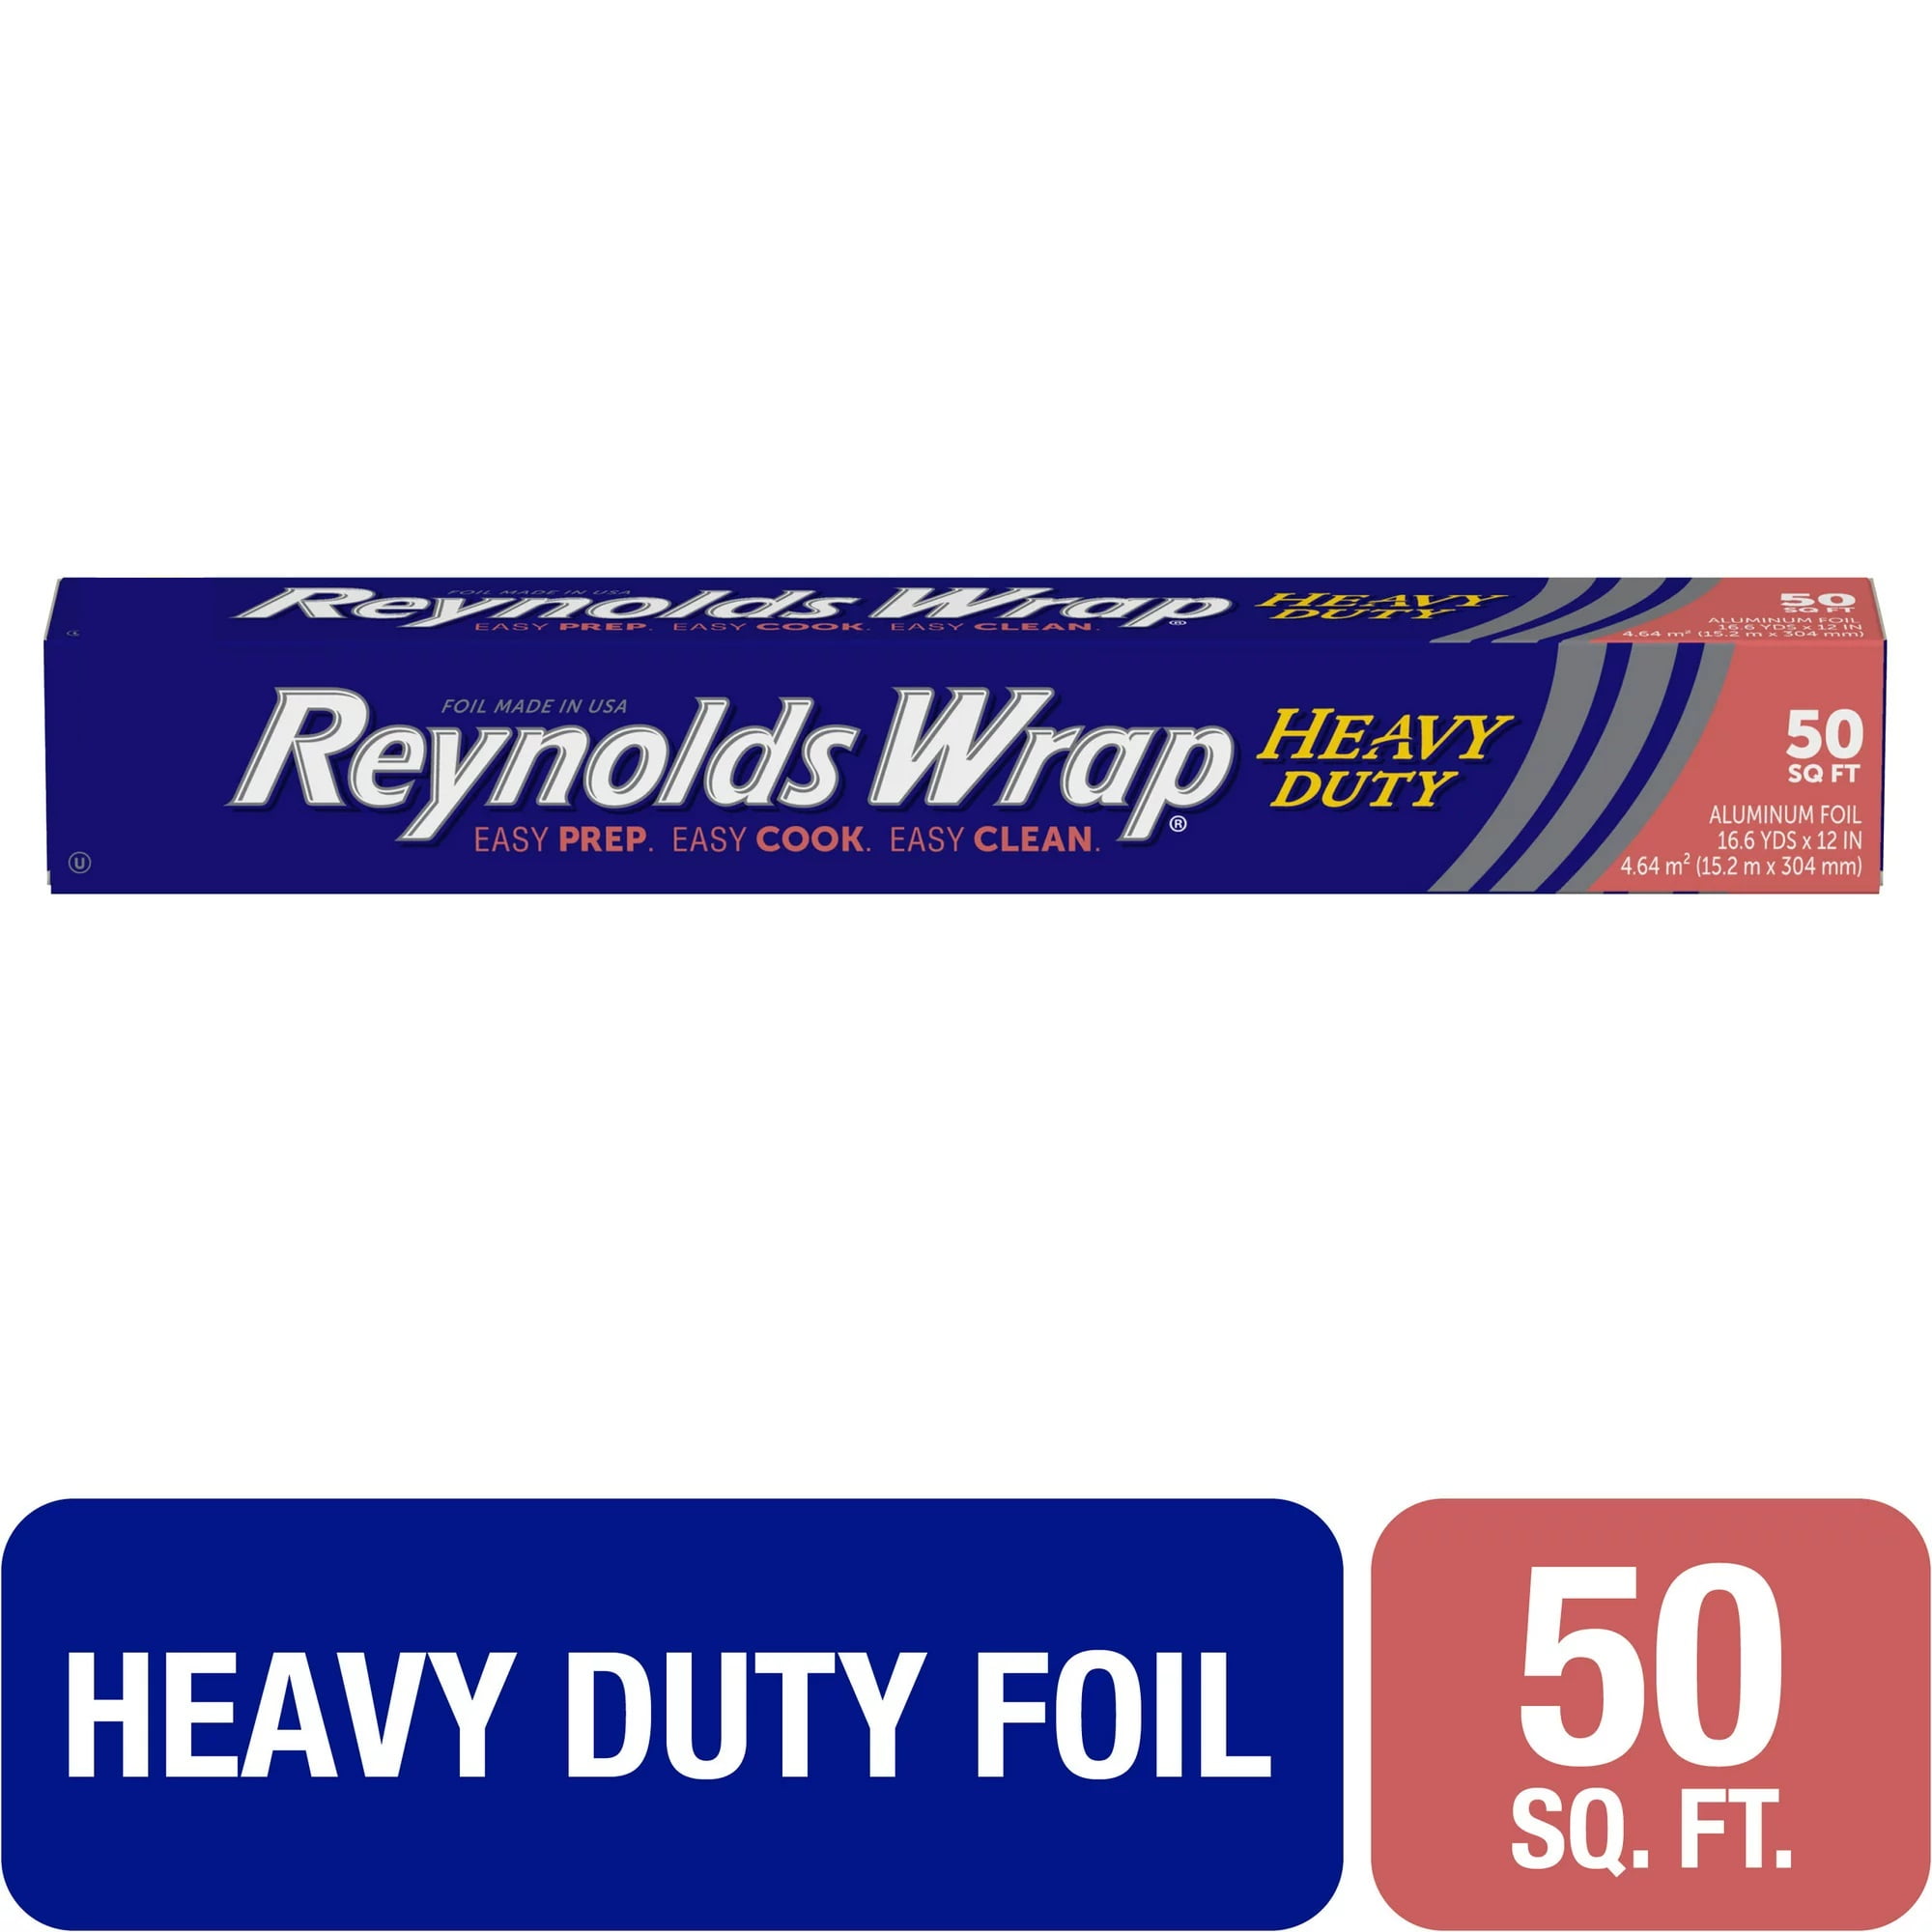 Royal Wrap Heavy Duty Aluminum Foil, 50 Sq. Ft.